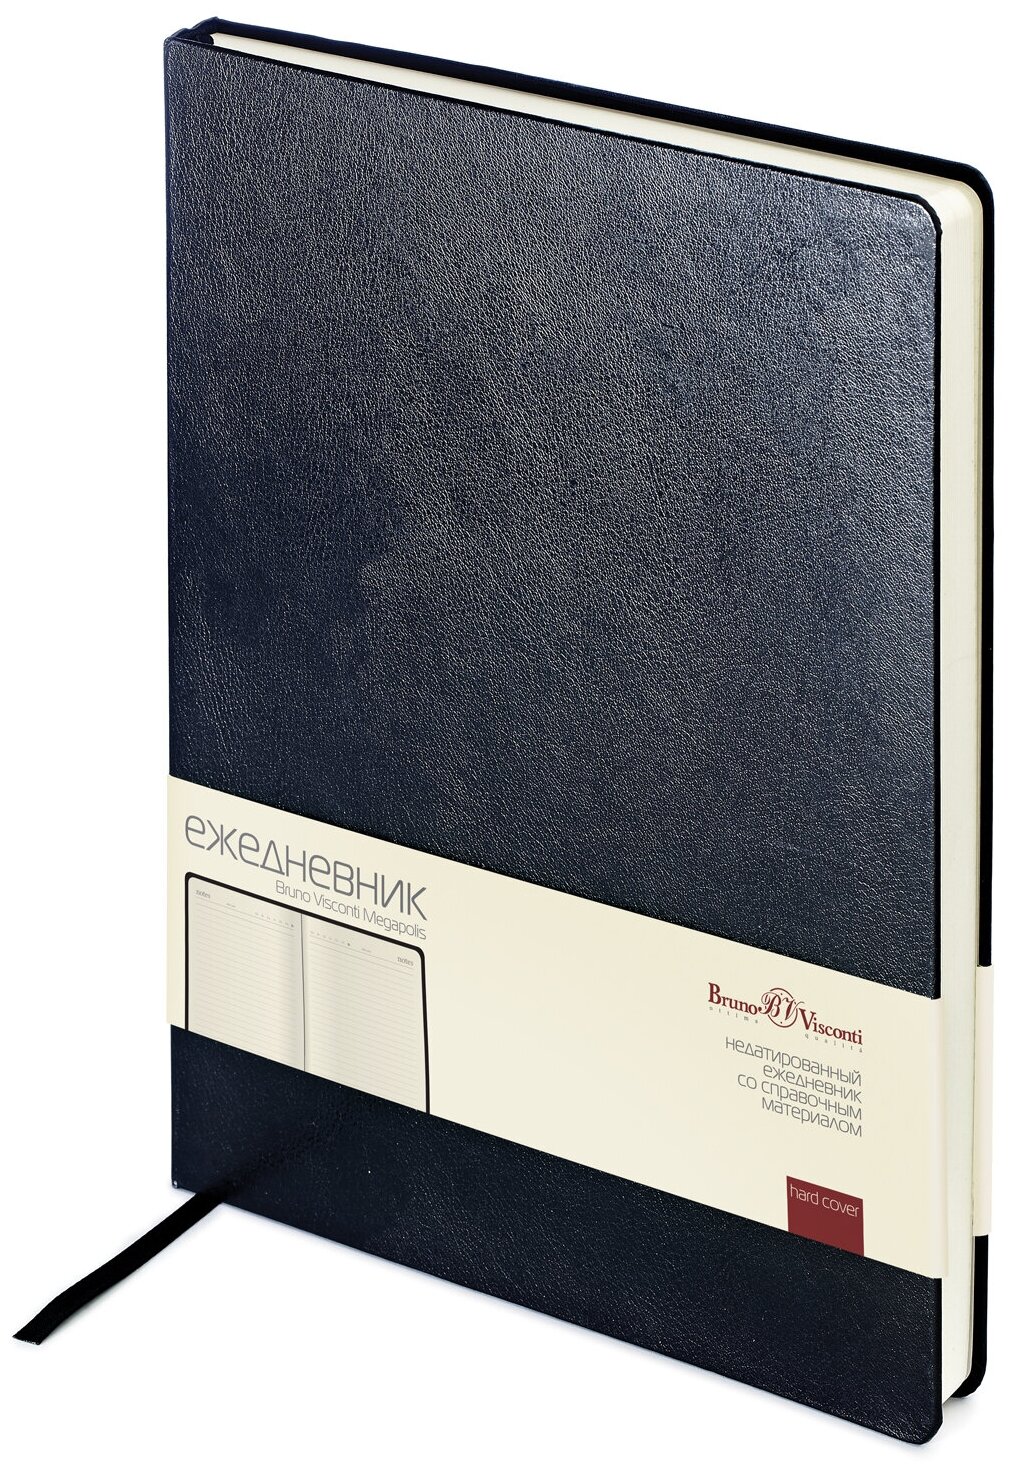 Ежедневник недатированный, Размер изделия 193 х 264 мм, "MEGAPOLIS" черный, 320 стр, Арт. 3-026/02